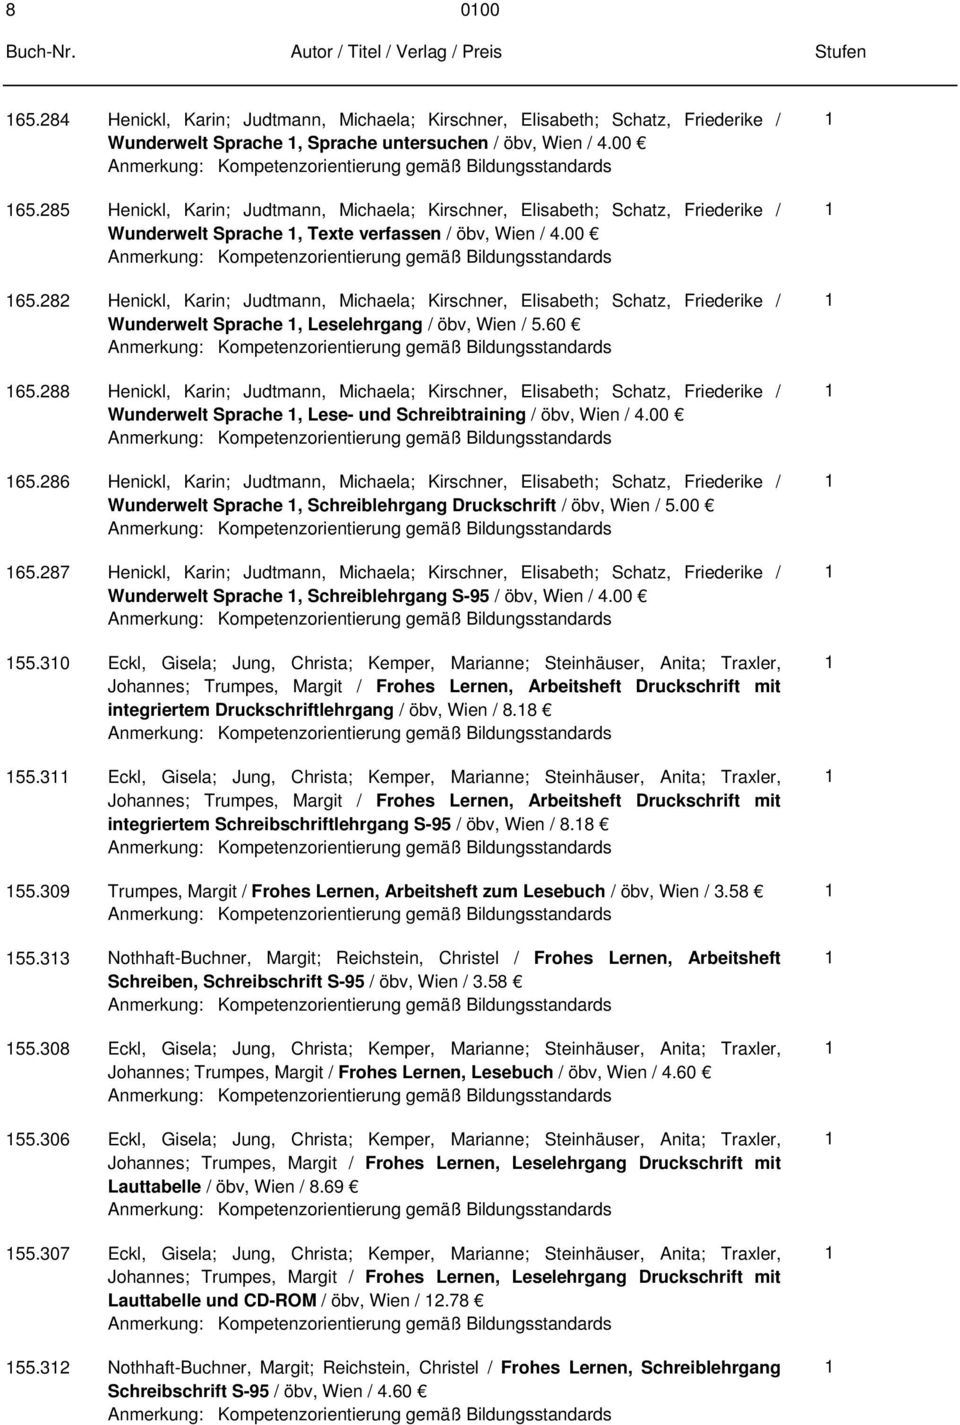 88 Henickl, Karin; Judtmann, Michaela; Kirschner, Elisabeth; Schatz, Friederike / Wunderwelt Sprache, Lese- und Schreibtraining / öbv, Wien /.00 65.